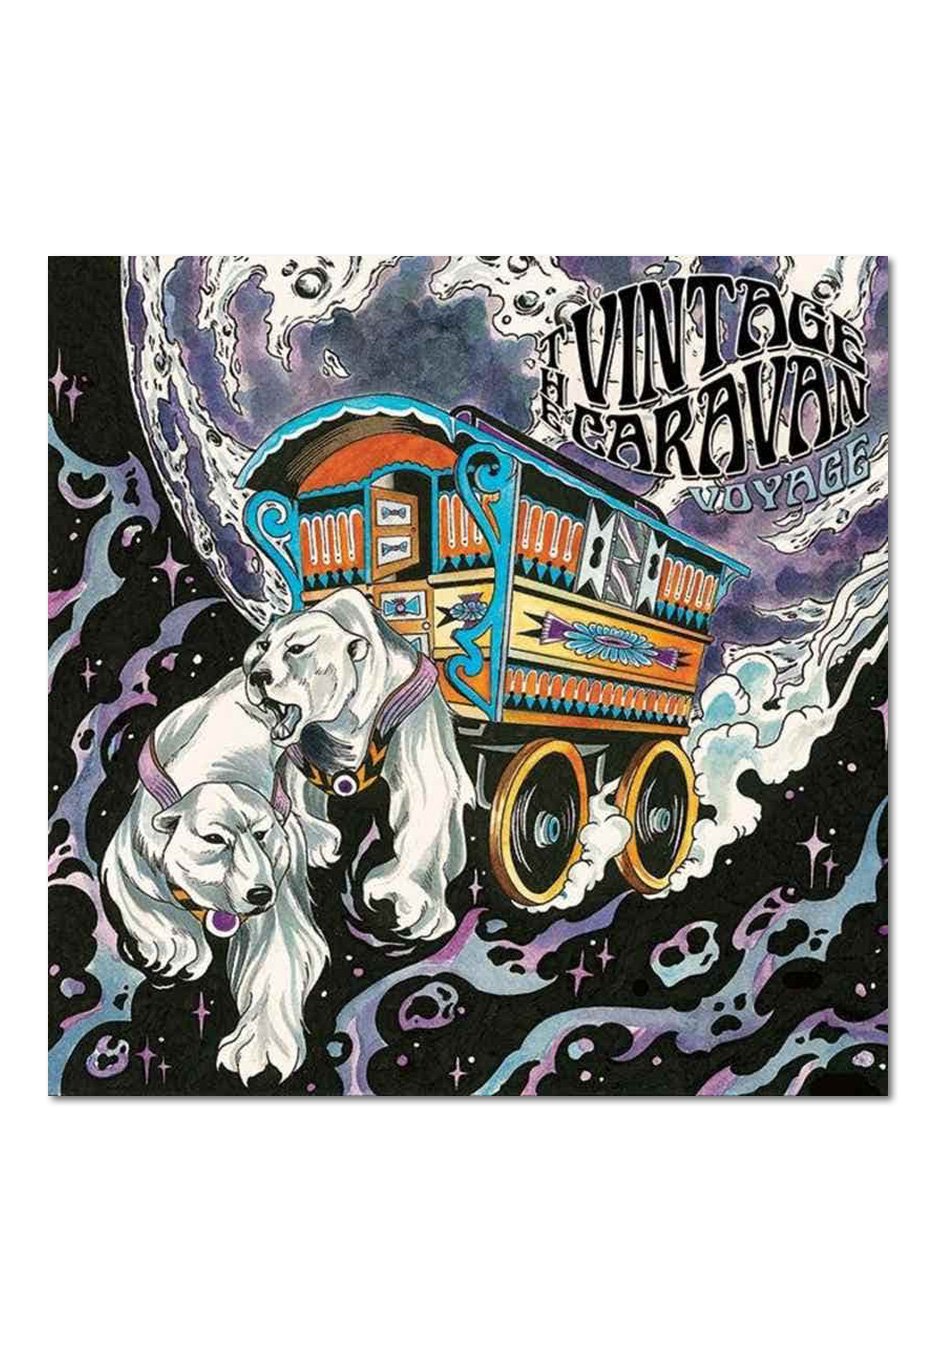 The Vintage Caravan - Voyage - CD